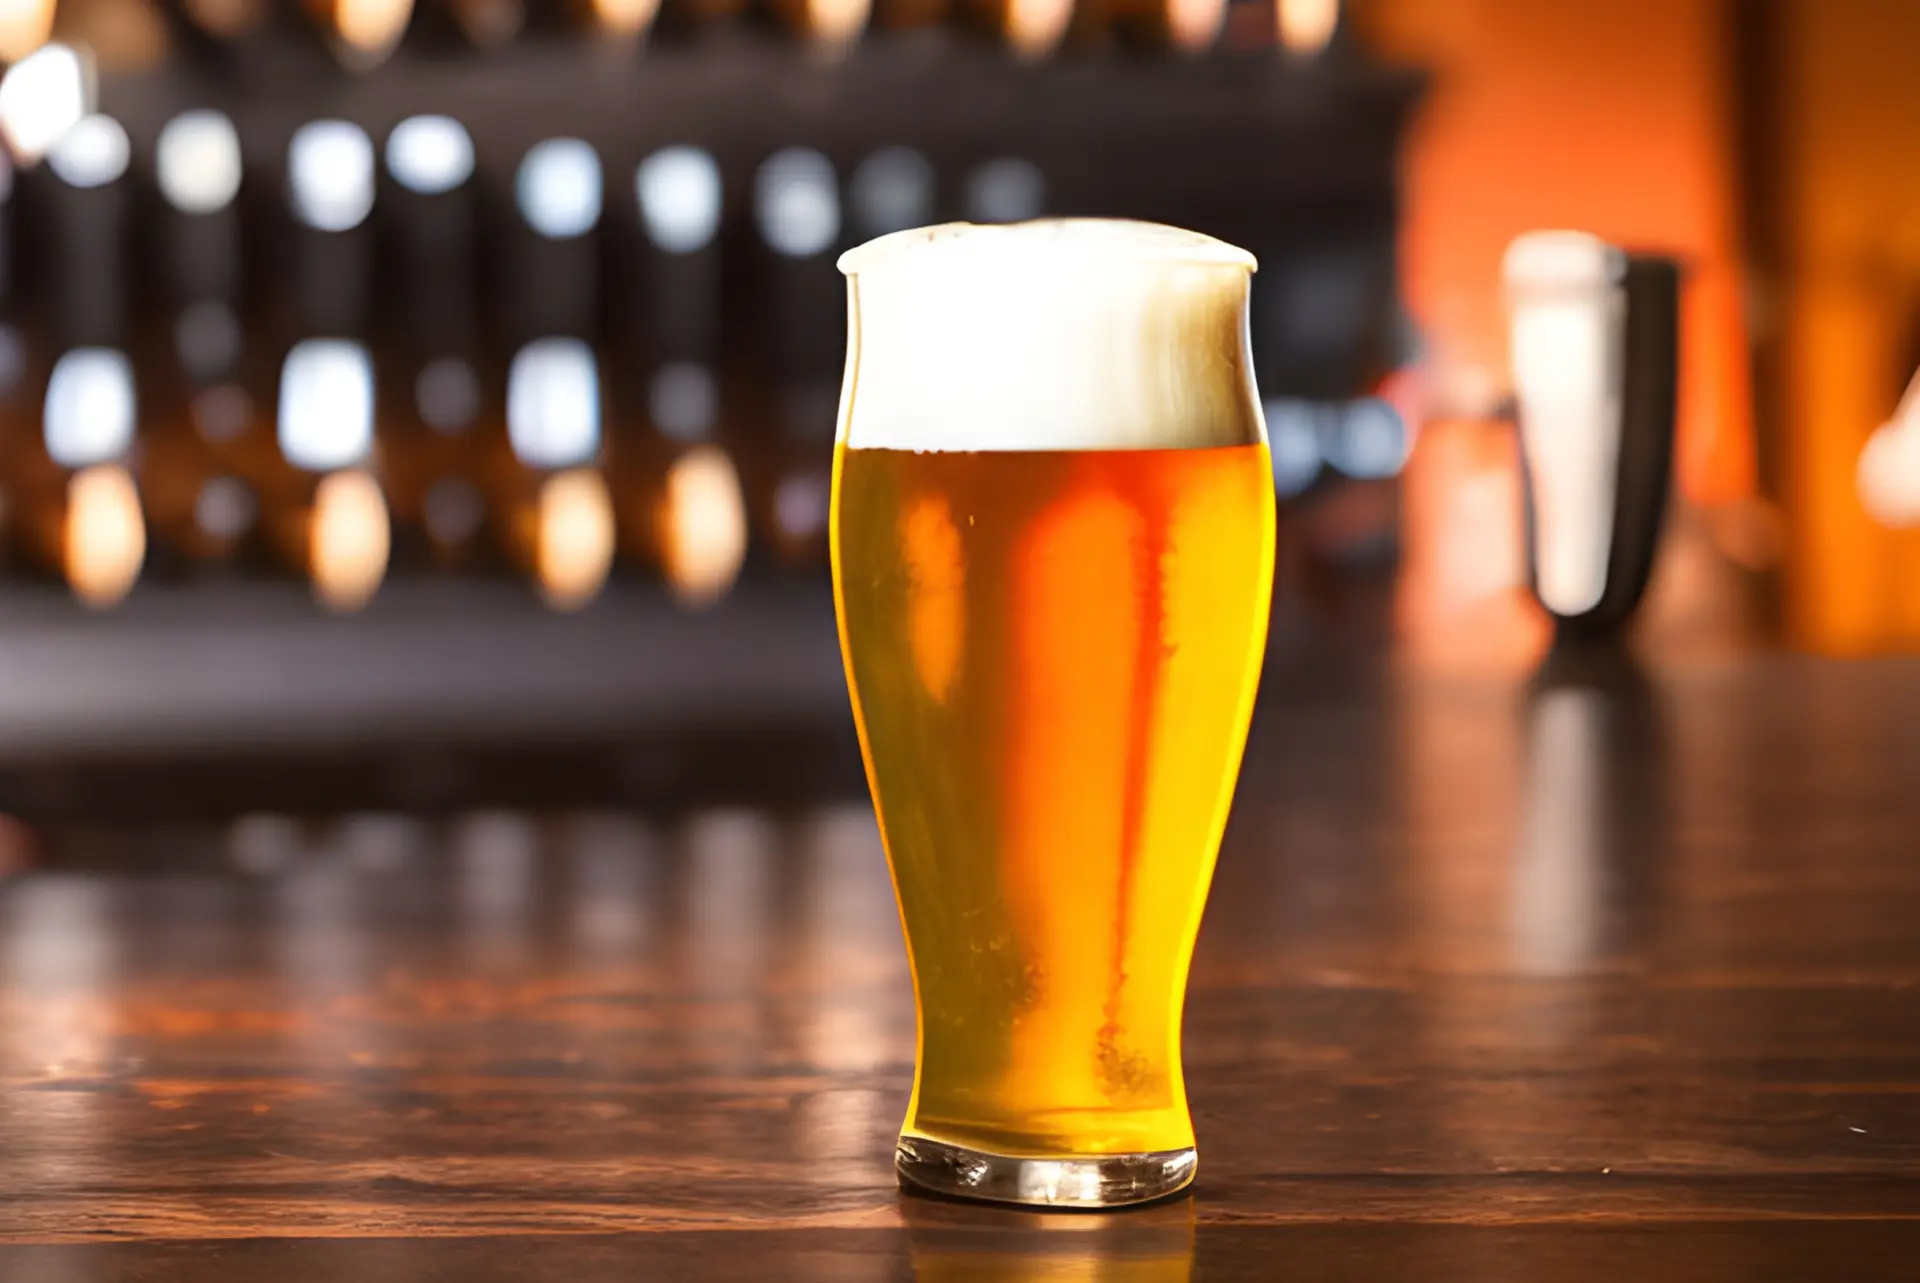 ブルワリー開業コラム クラフトビール醸造所開業にかかる初期投資とは